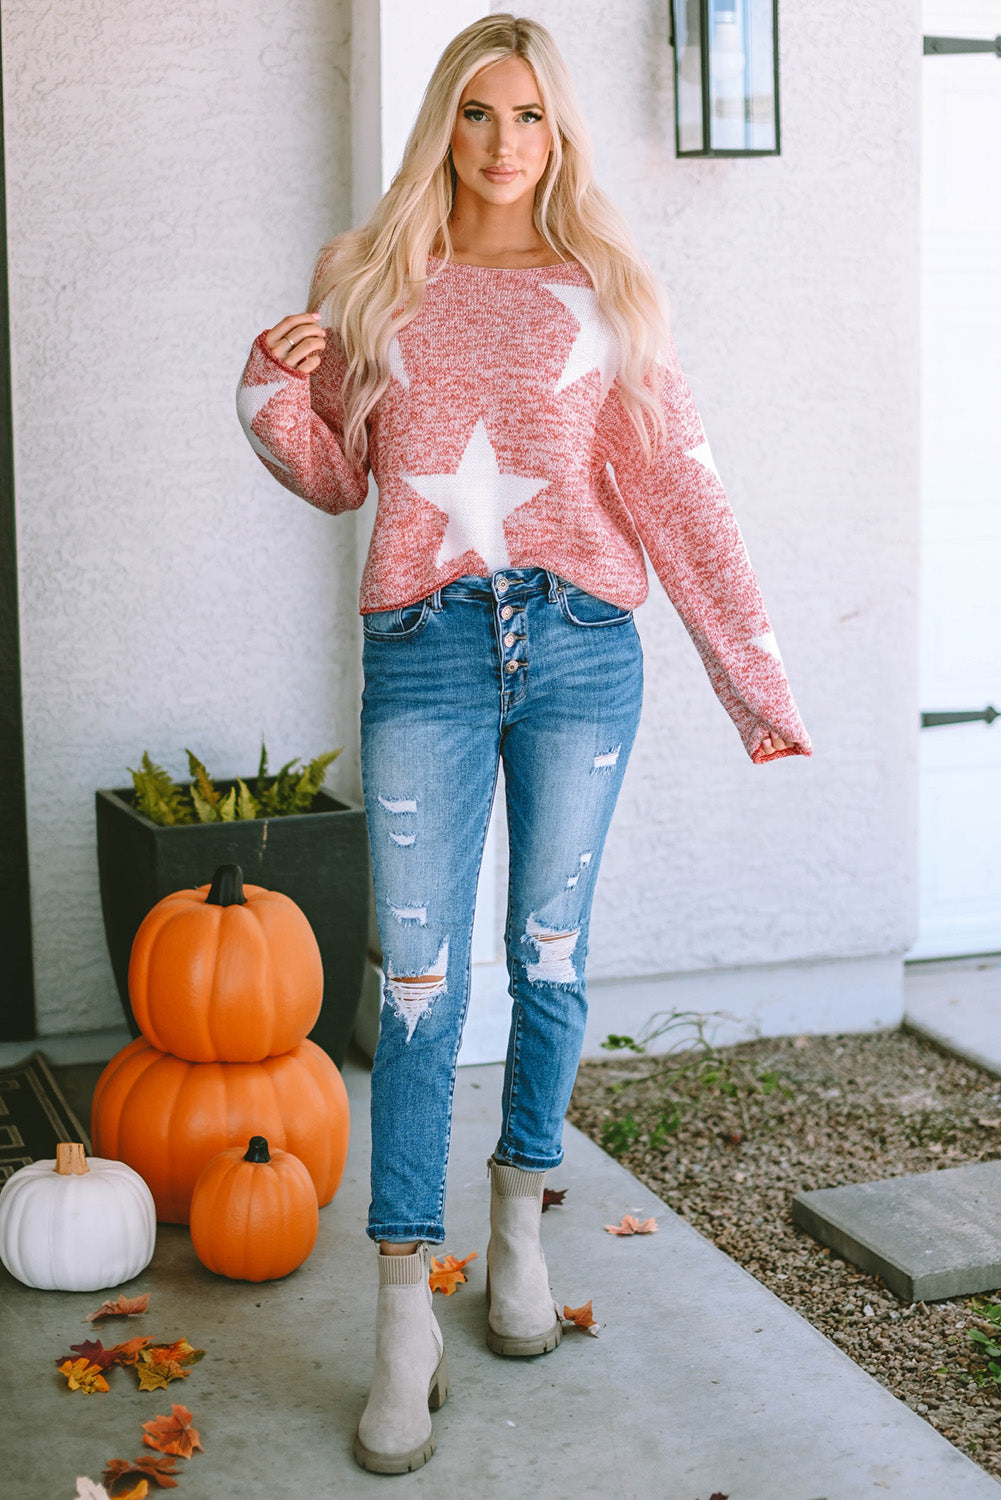 Ležerni pleteni pulover s velikim zvijezdama